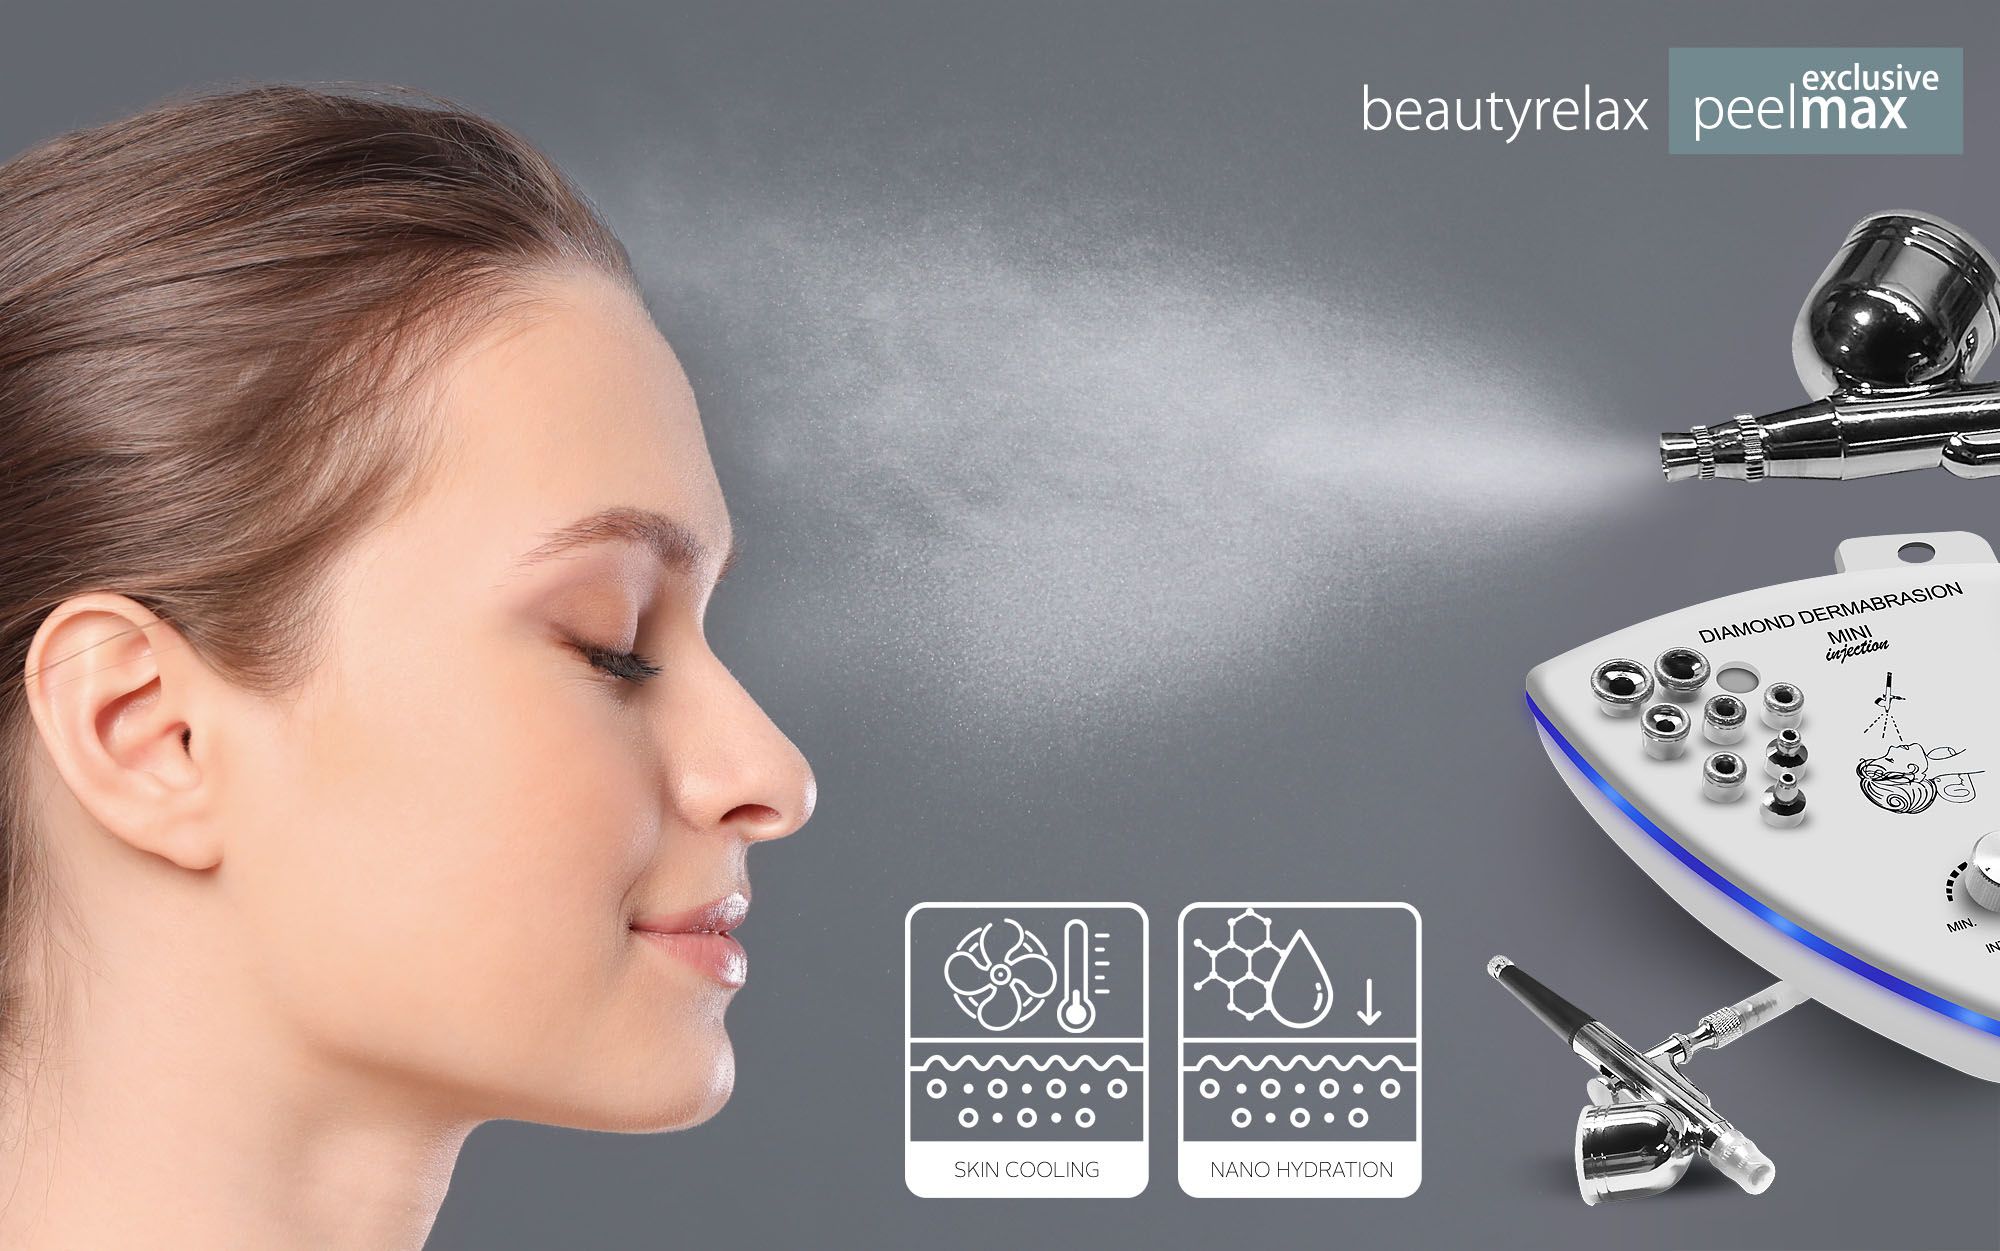 Profesionální přístroj na abrazi pleti BeautyRelax Peelmax Exclusive